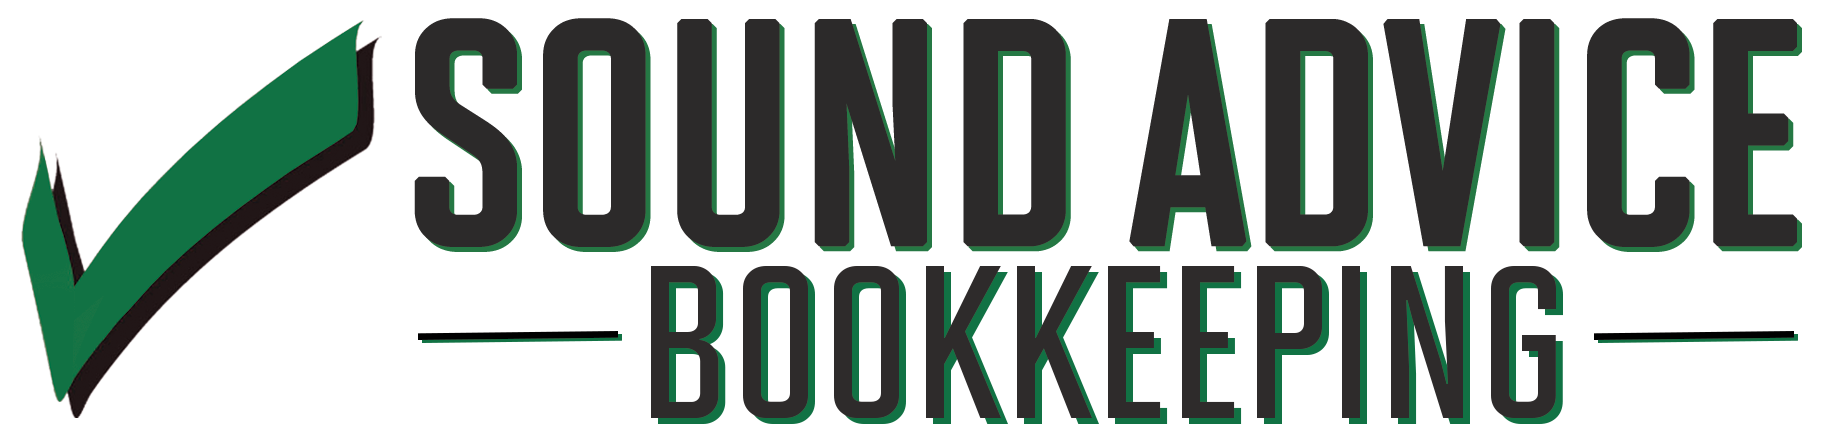 SA-Bookkeeping-Green-Logo (2)